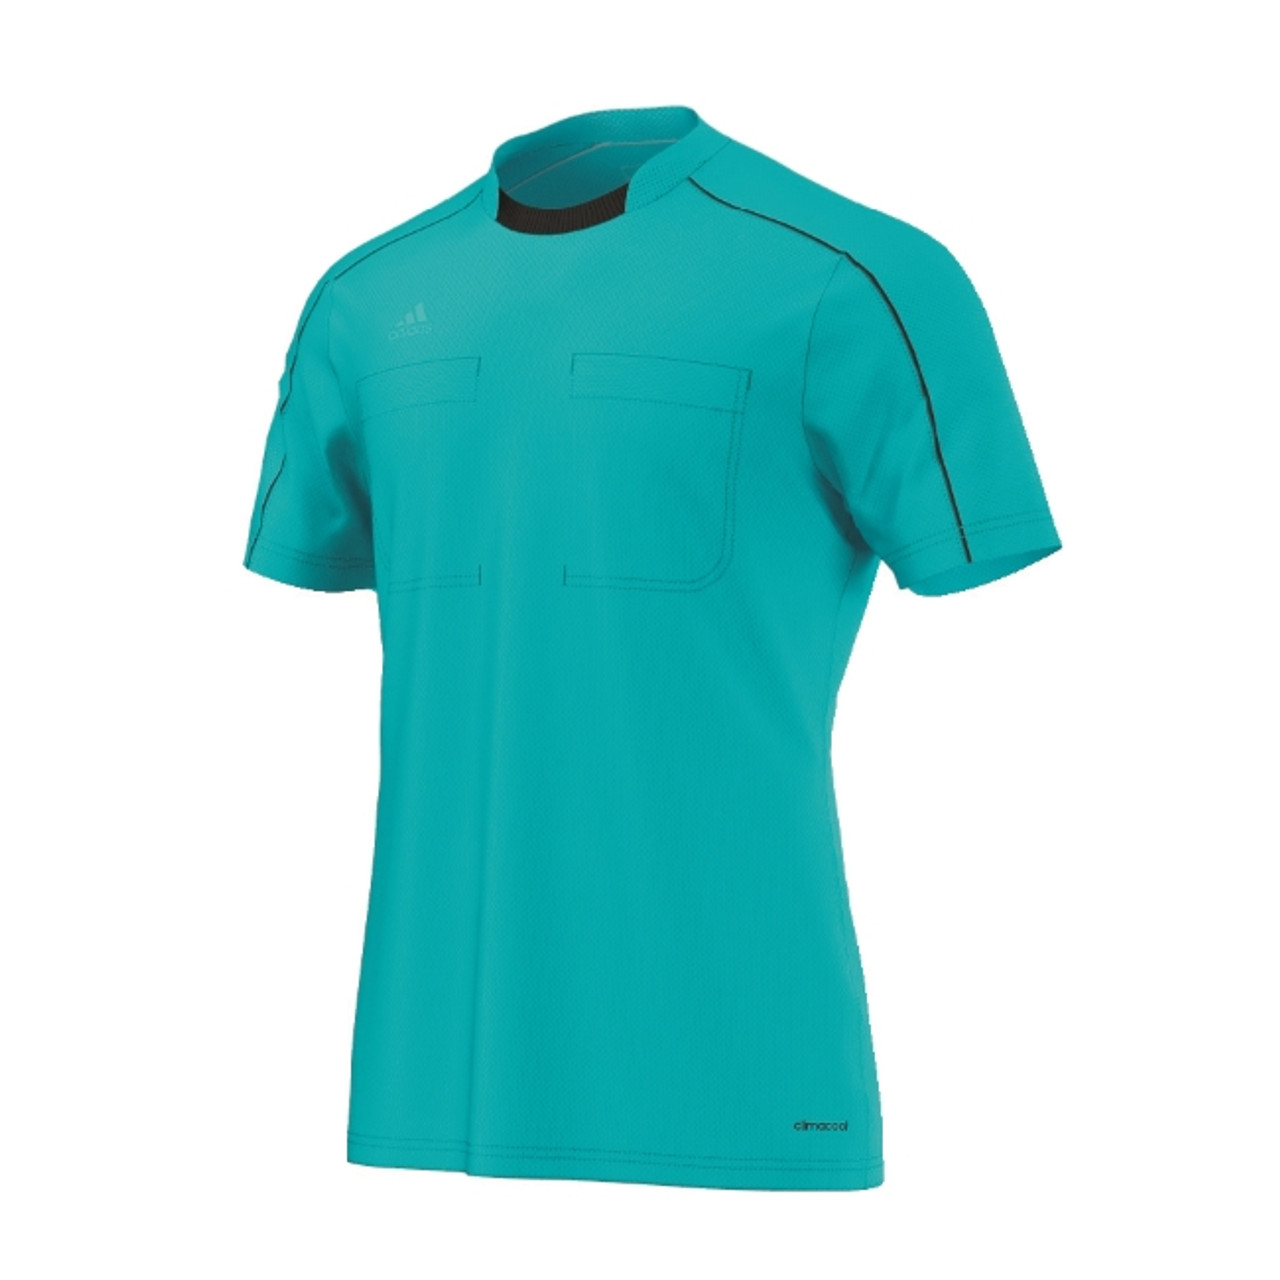 Encogimiento De todos modos Fábula 2016 Adidas Referee Jersey Short Sleeve (Blue Glow)